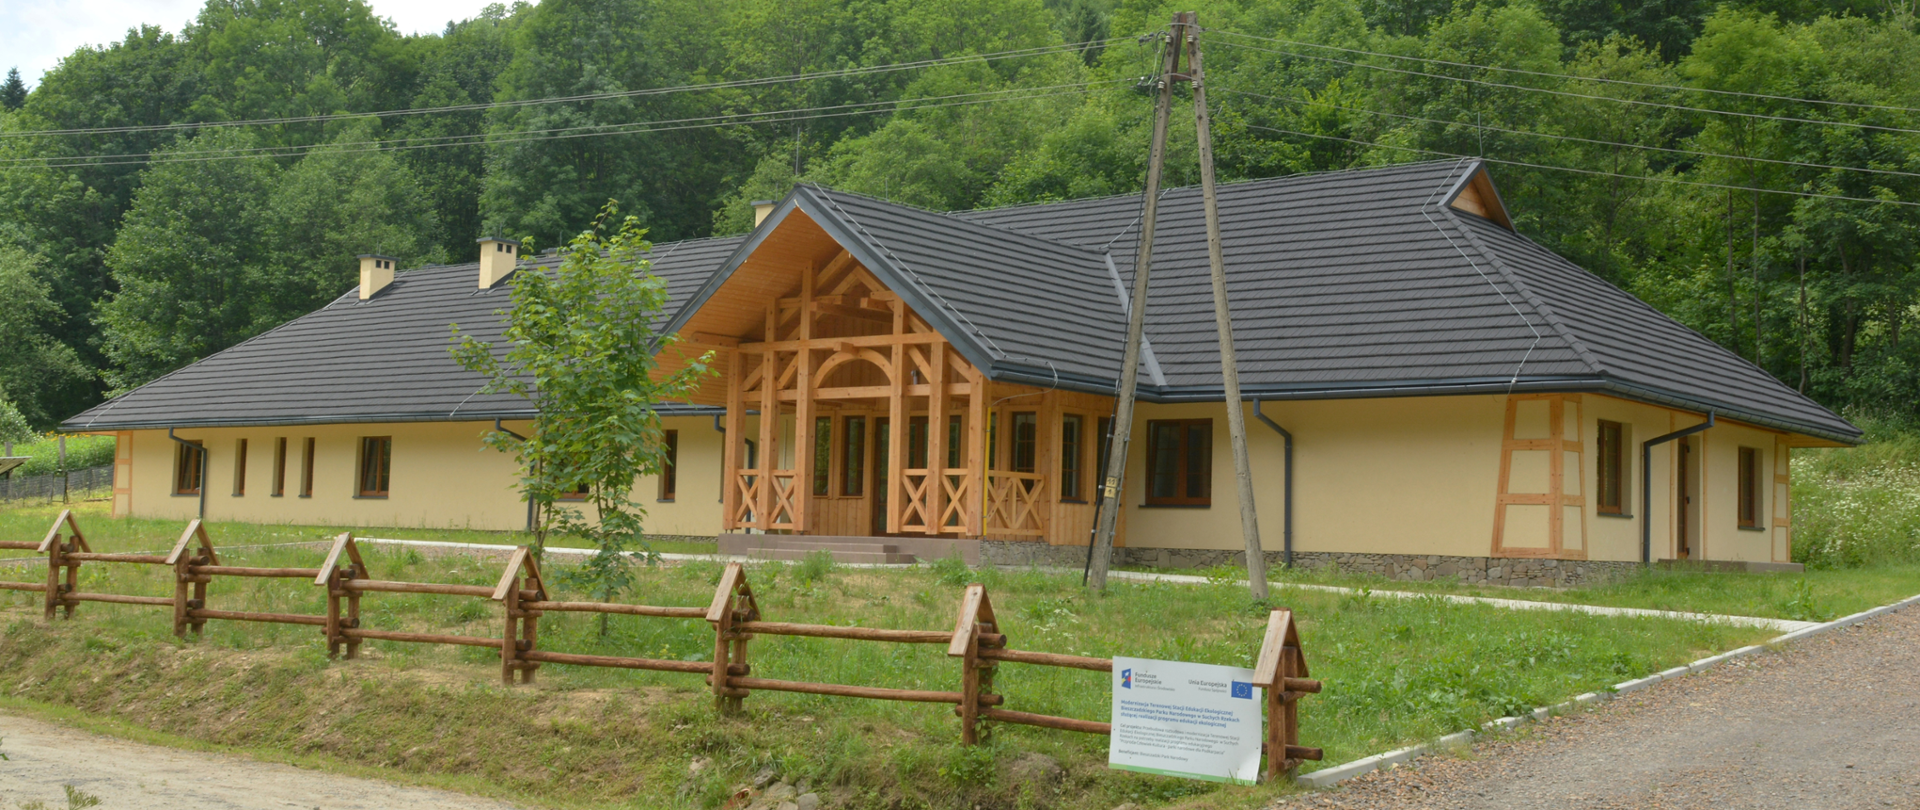 Widok budynku Terenowej Stacji Edukacji Ekologicznej Bieszczadzkiego Parku Narodowego w Suchych Rzekach